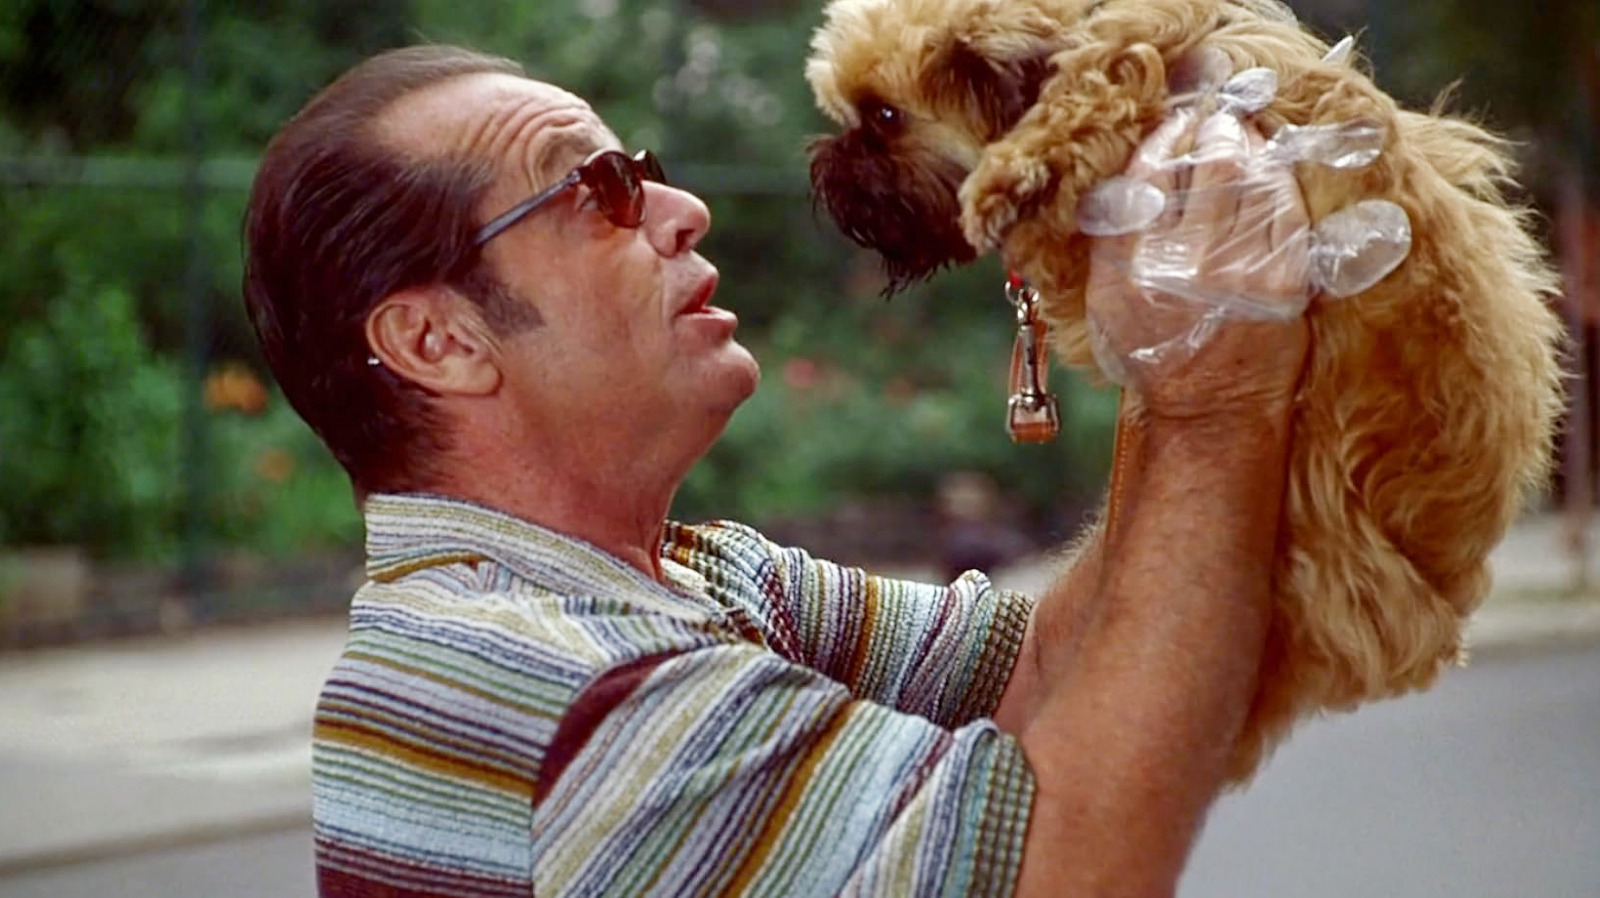 O diretor de Tão bom quanto é impossível colocou Jack Nicholson em uma posição frustrante